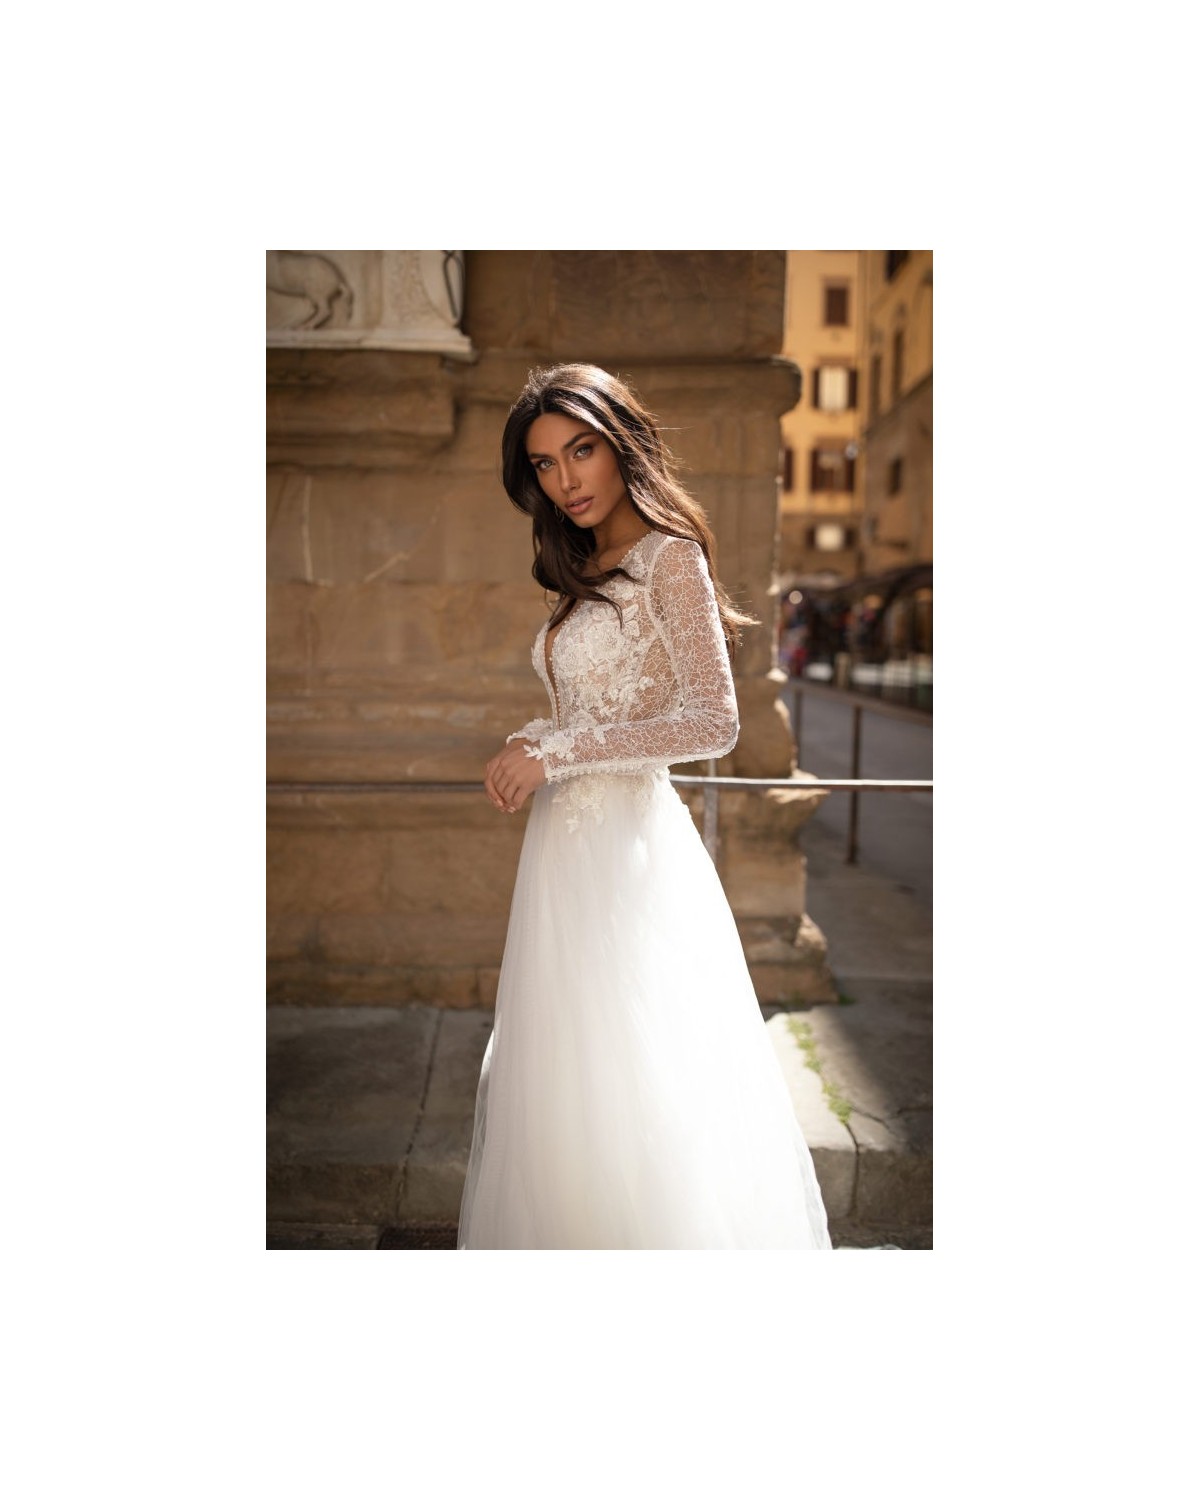 Axelle - abito da sposa collezione 2020 - Millanova